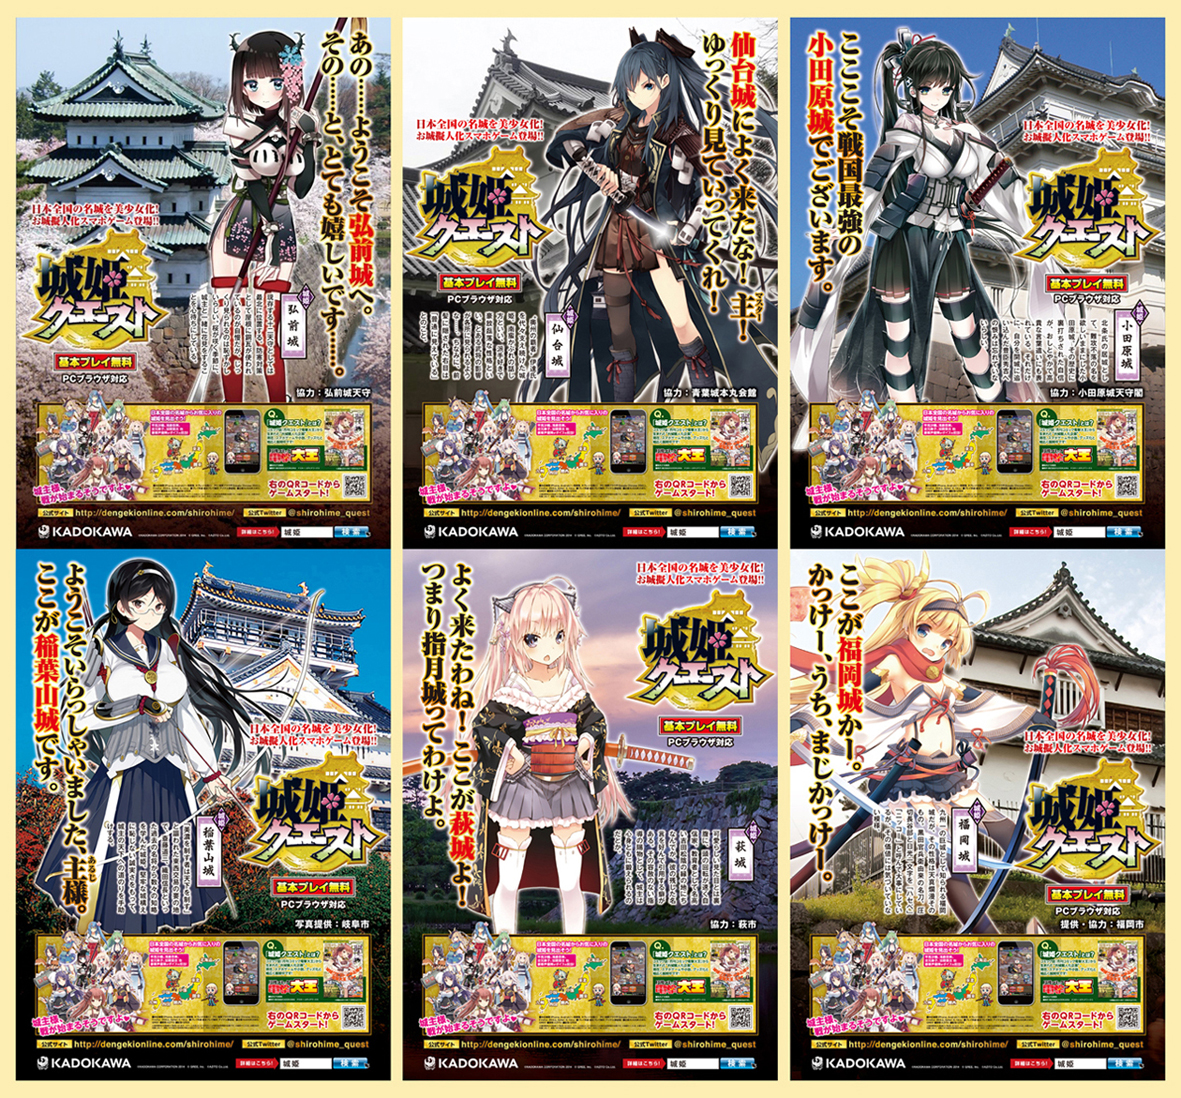 大型ソーシャルゲーム 城姫クエスト と日本の名城がコラボレーション 城 姫 がデザインされた特製ポスターが日本各地の名城に登場 株式会社kadokawaのプレスリリース